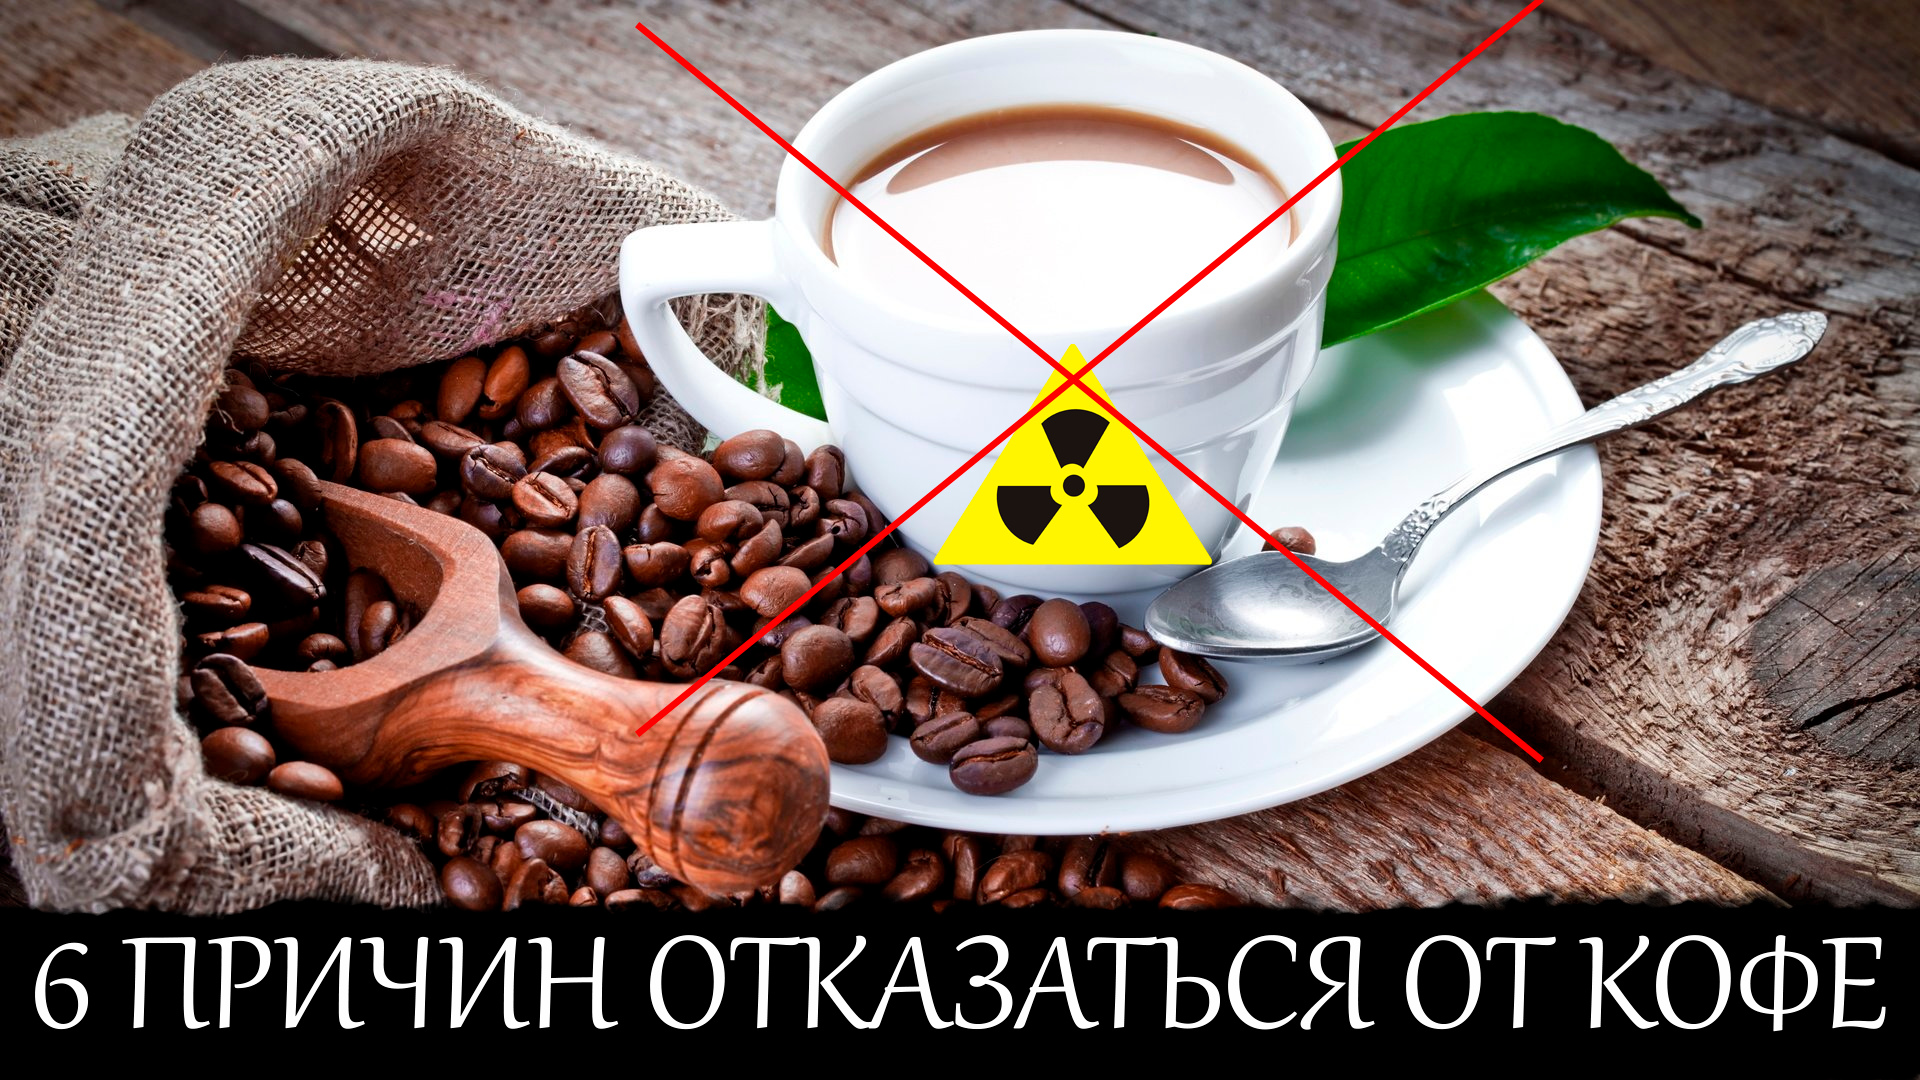 В кофе кофеин в какао. Отказаться от кофе. Если в кофе кофеин то в какао. Если отказаться от кофе. Декофеинизированный кофе.